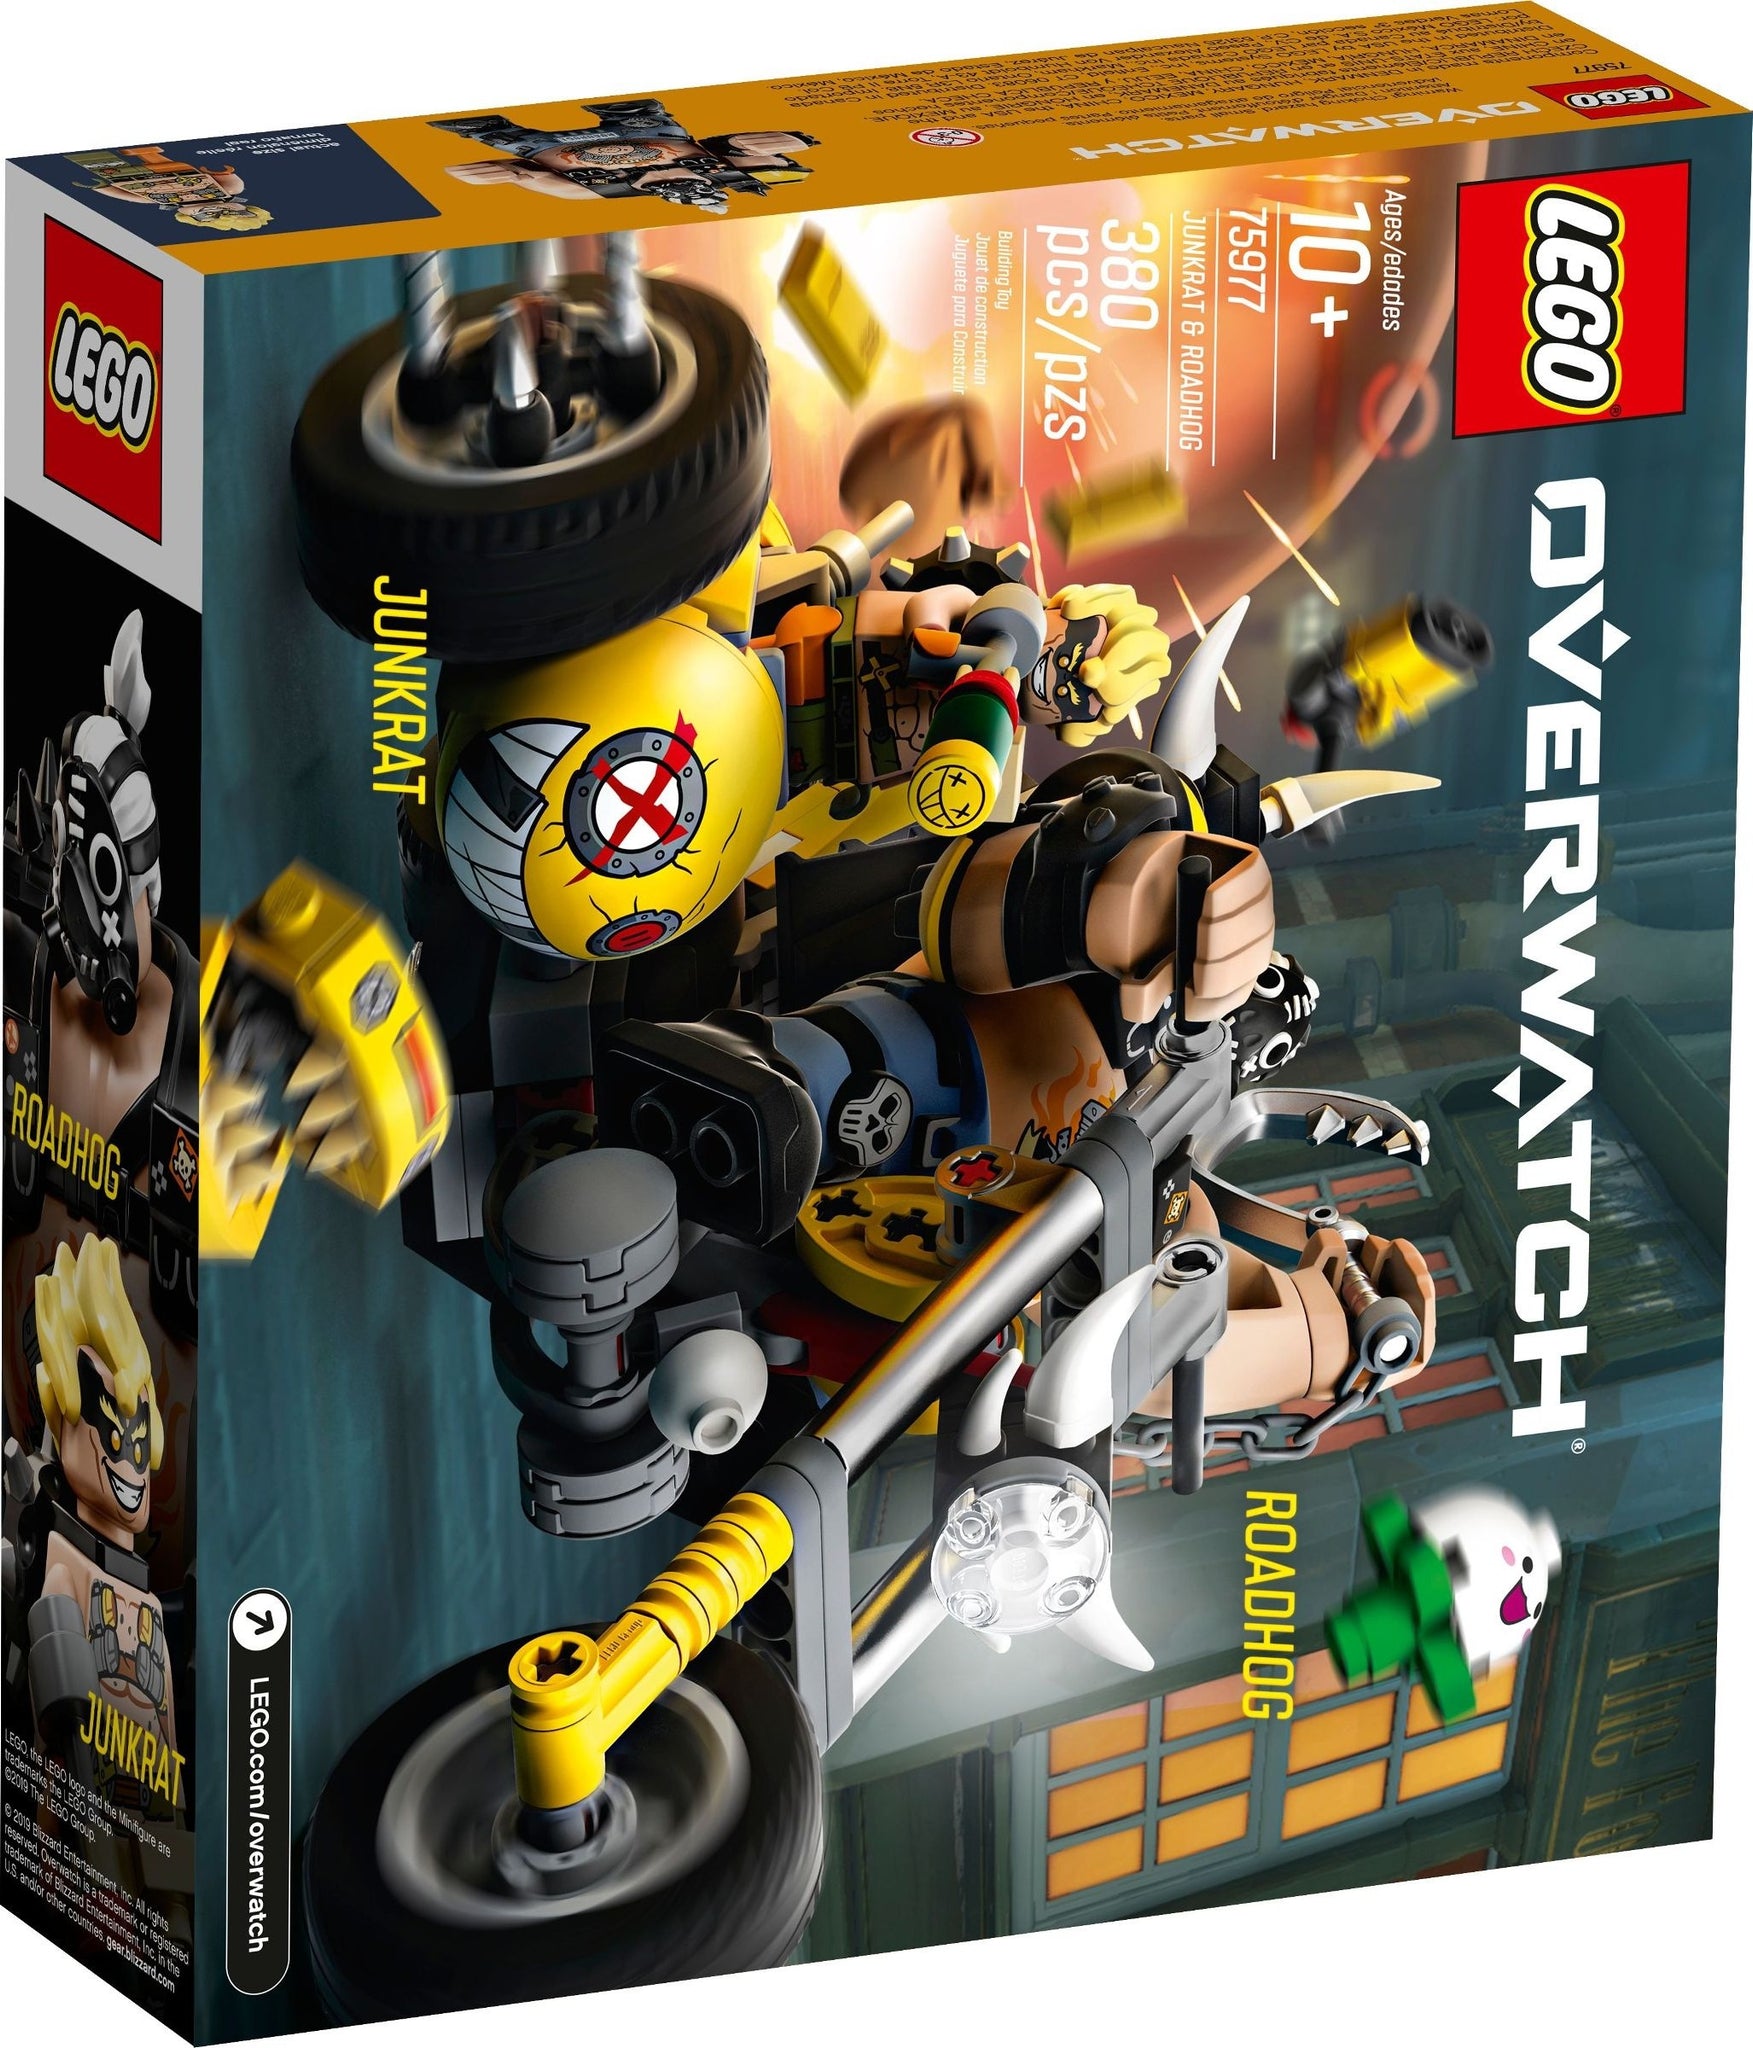 LEGO® Overwatch® 75977 Junkrat & (320 pieces) – AESOP'S FABLE